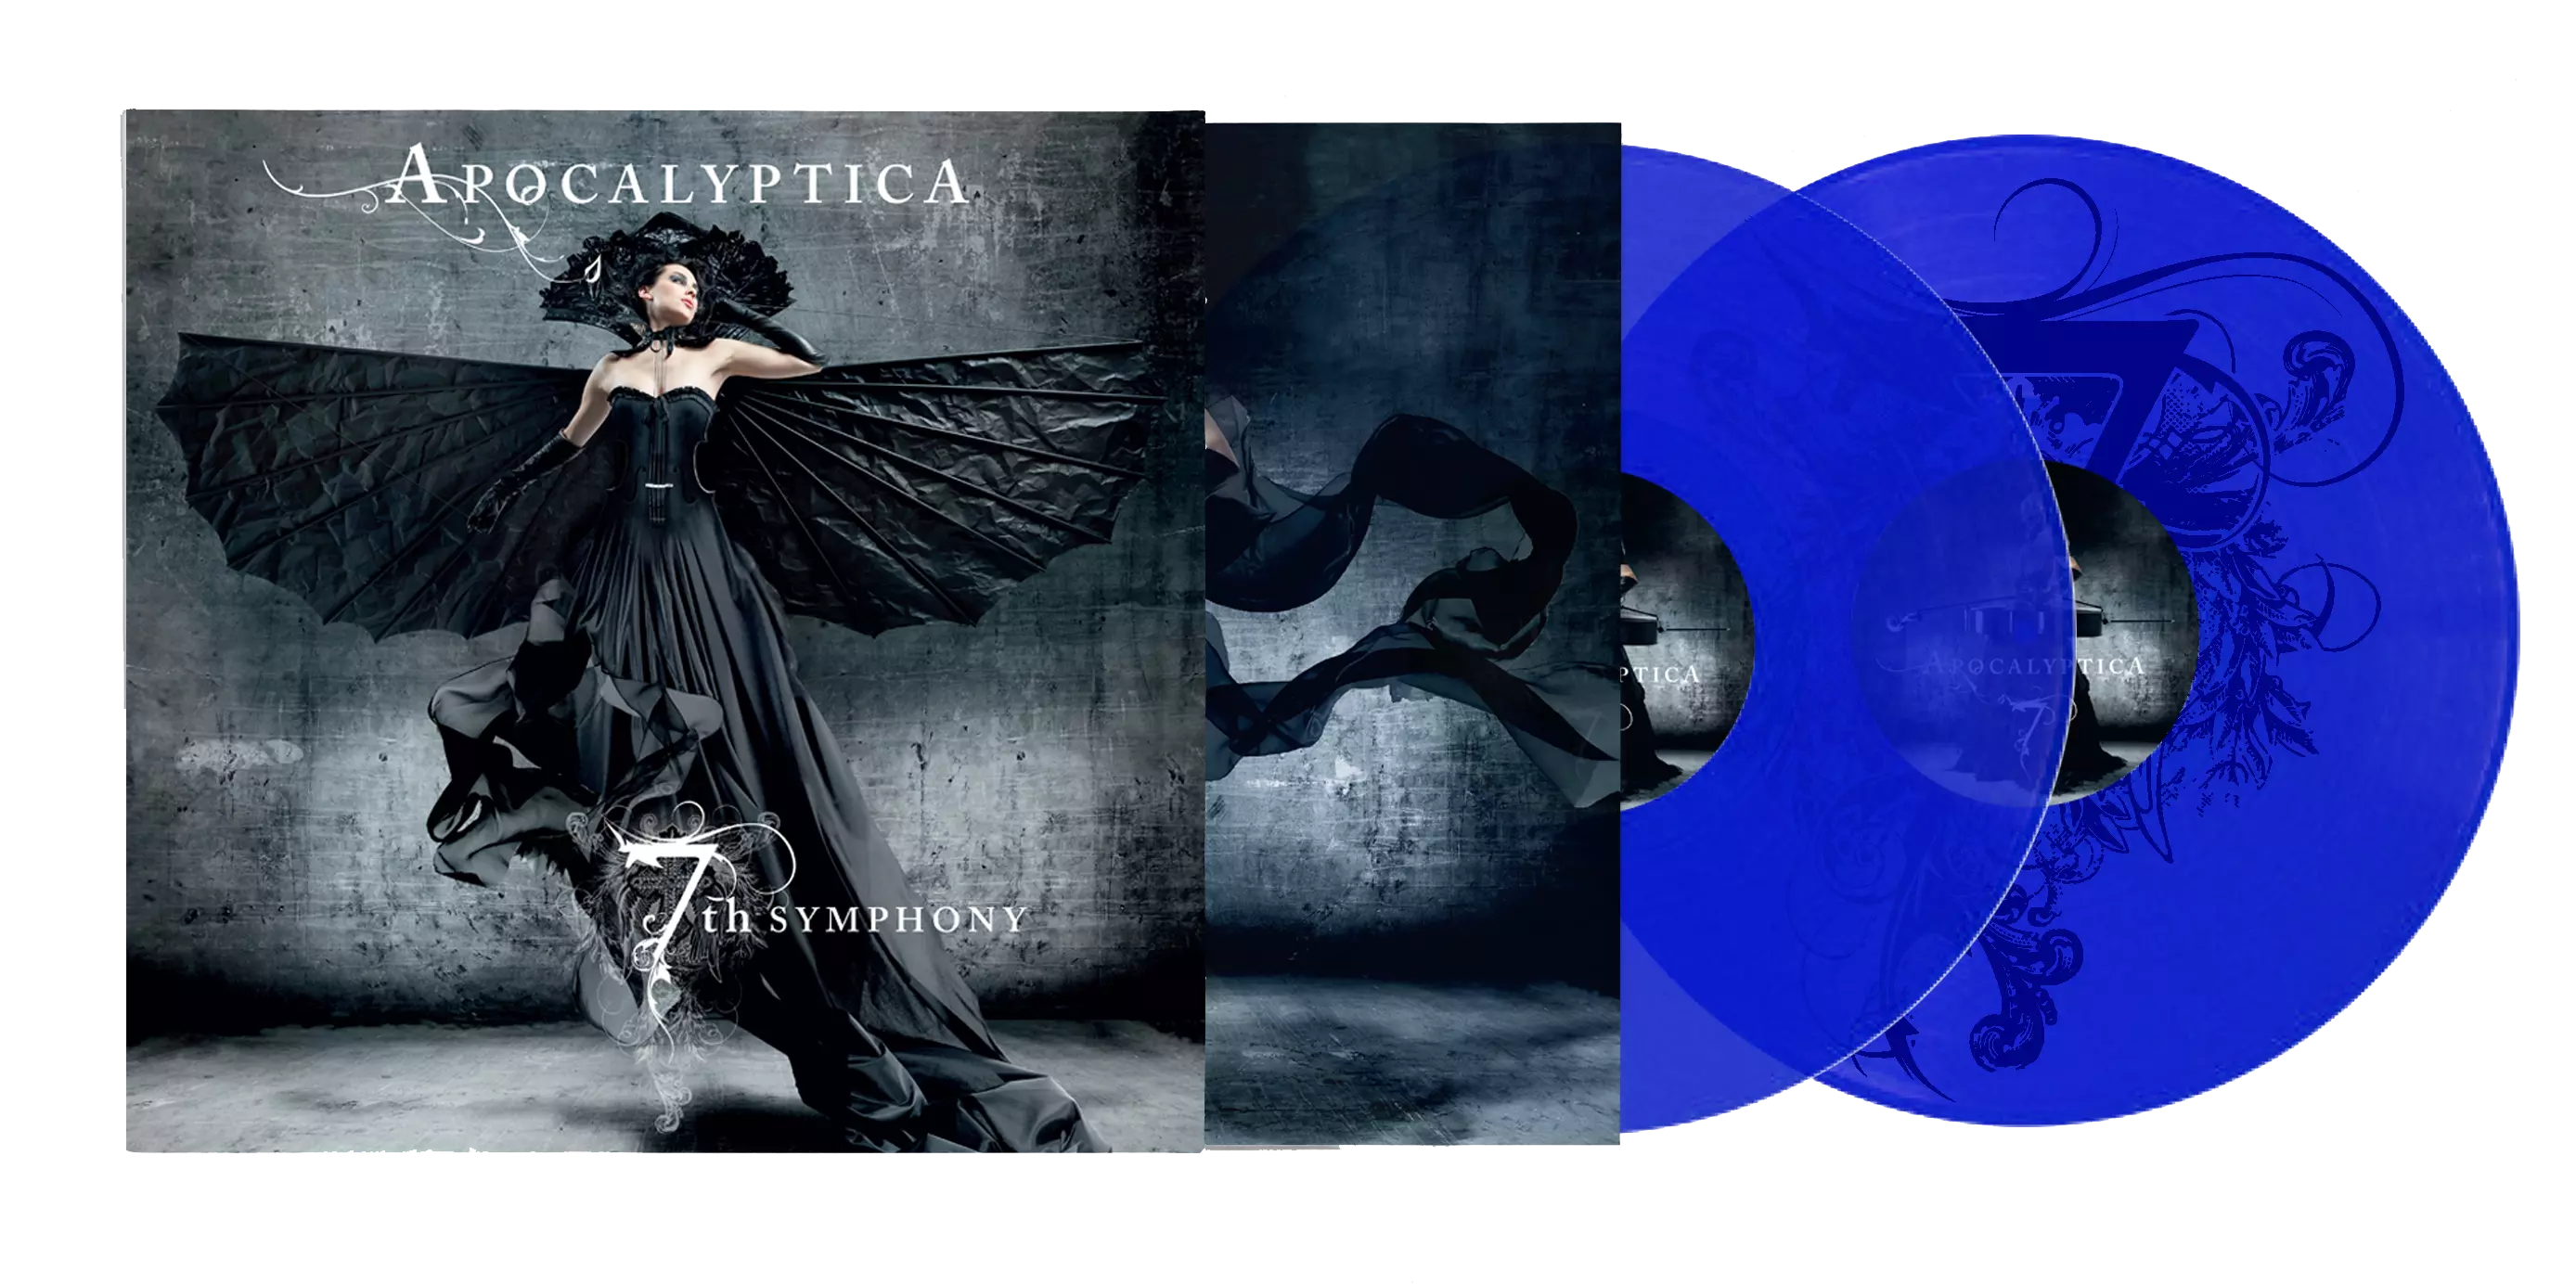 APOCALYPTICA - 7th Symphony Anniversary Deluxe Box [LPBOXSET]